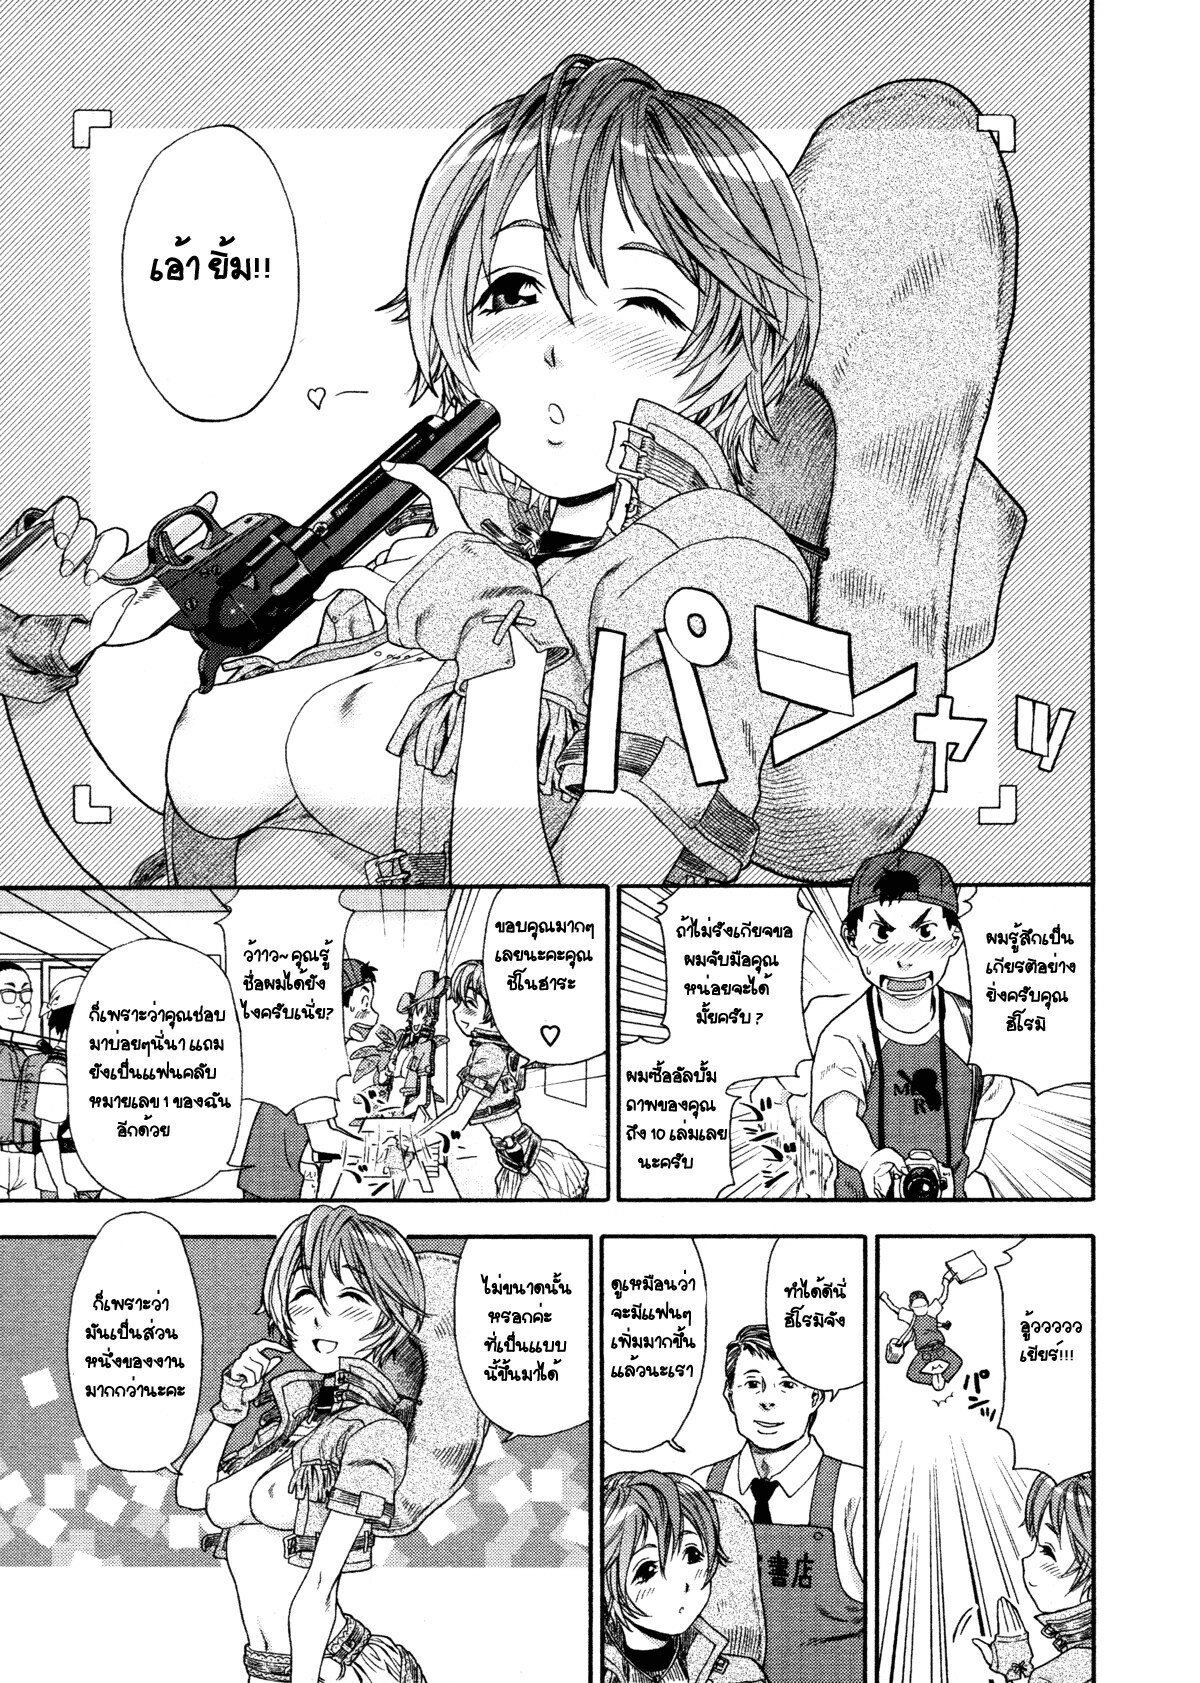 [Yamatogawa] COW GIRL =Aqua Bless chapter3= [Thai] page 1 full